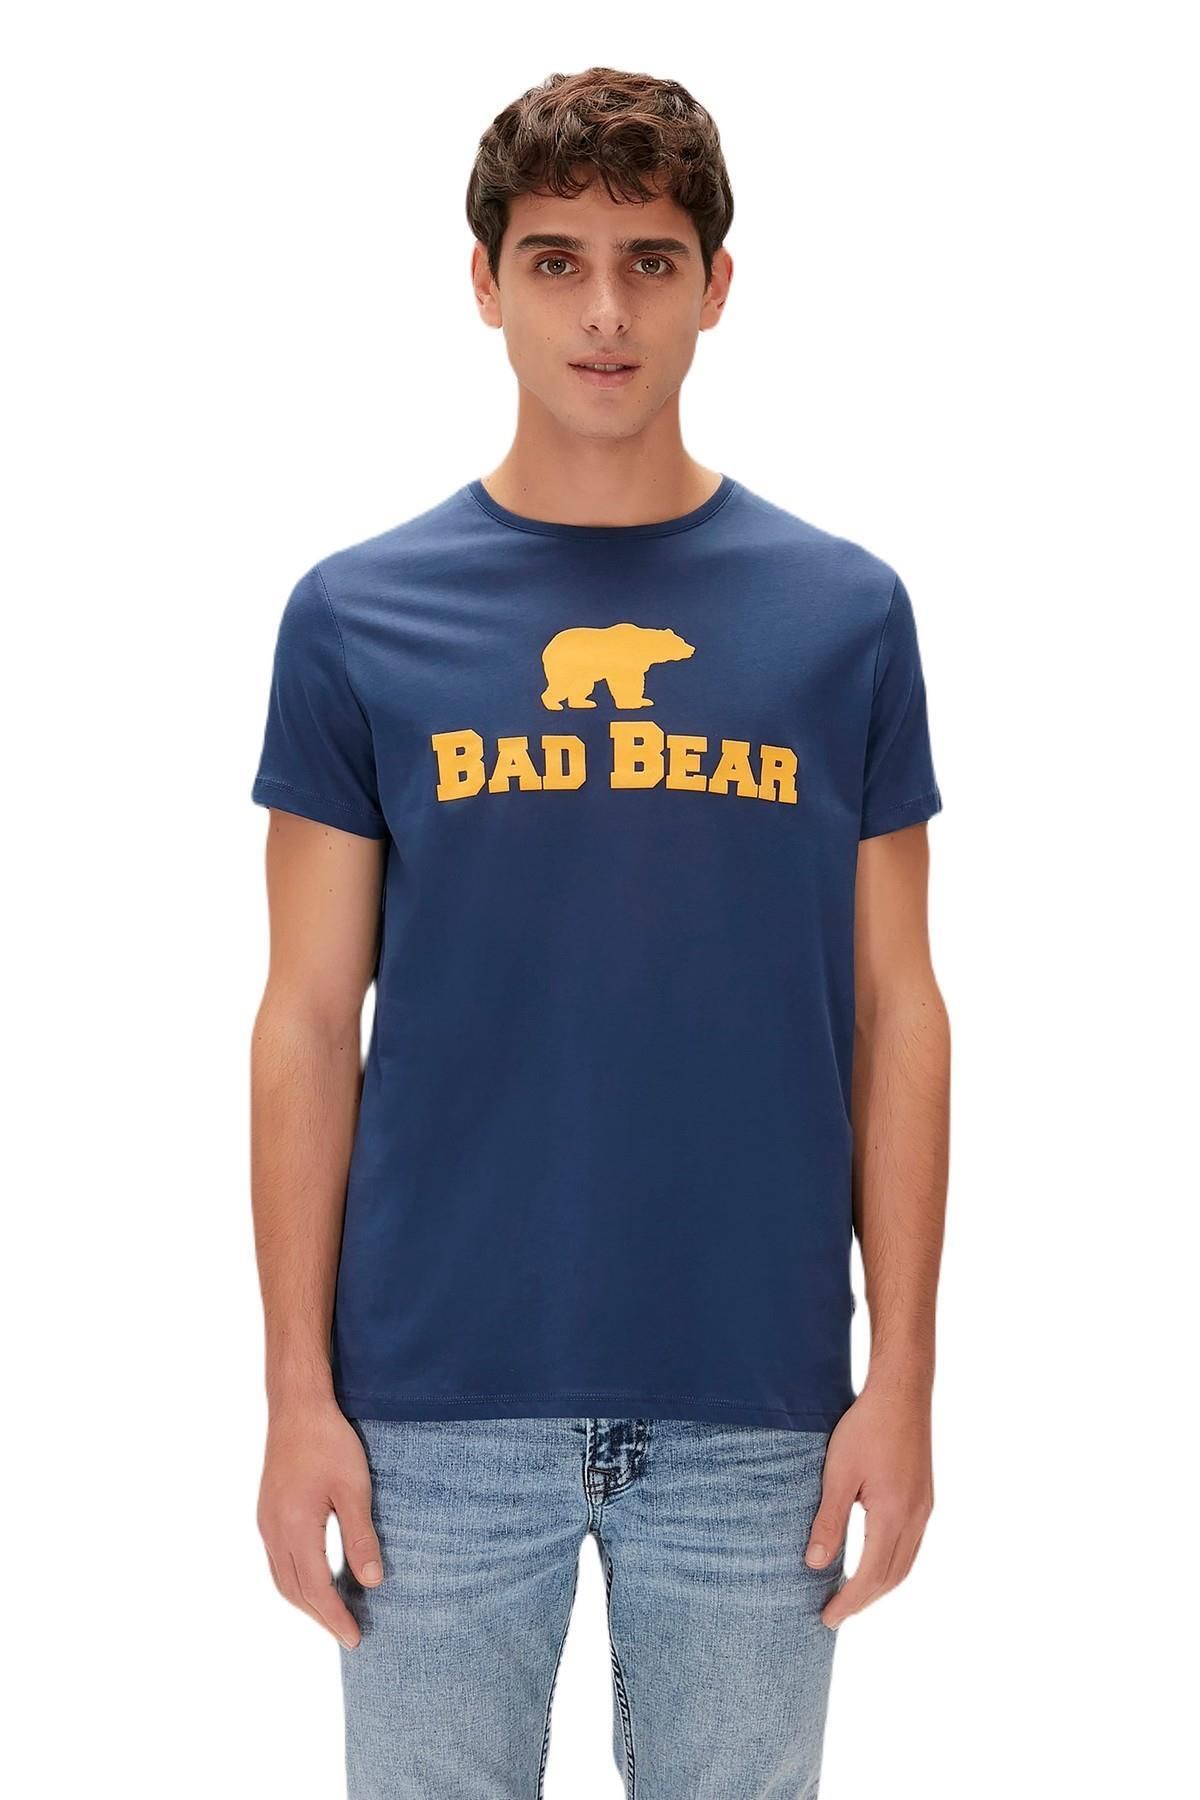 Bad Bear 19.01.07.002-c15 Tee Erkek T-shirt